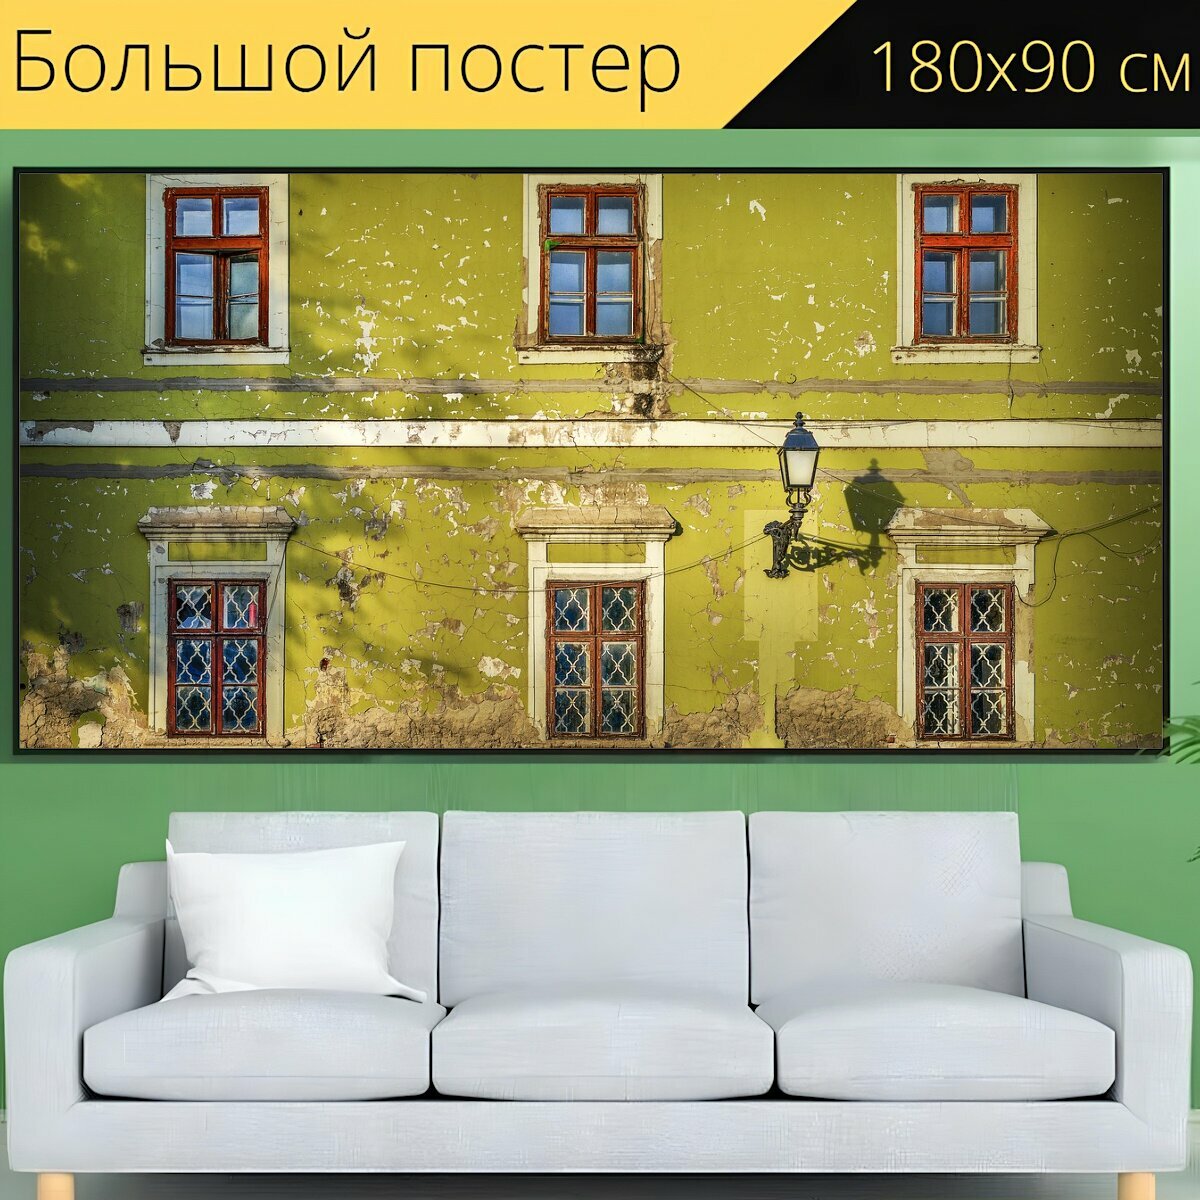 Большой постер "Окно, старый, дом" 180 x 90 см. для интерьера